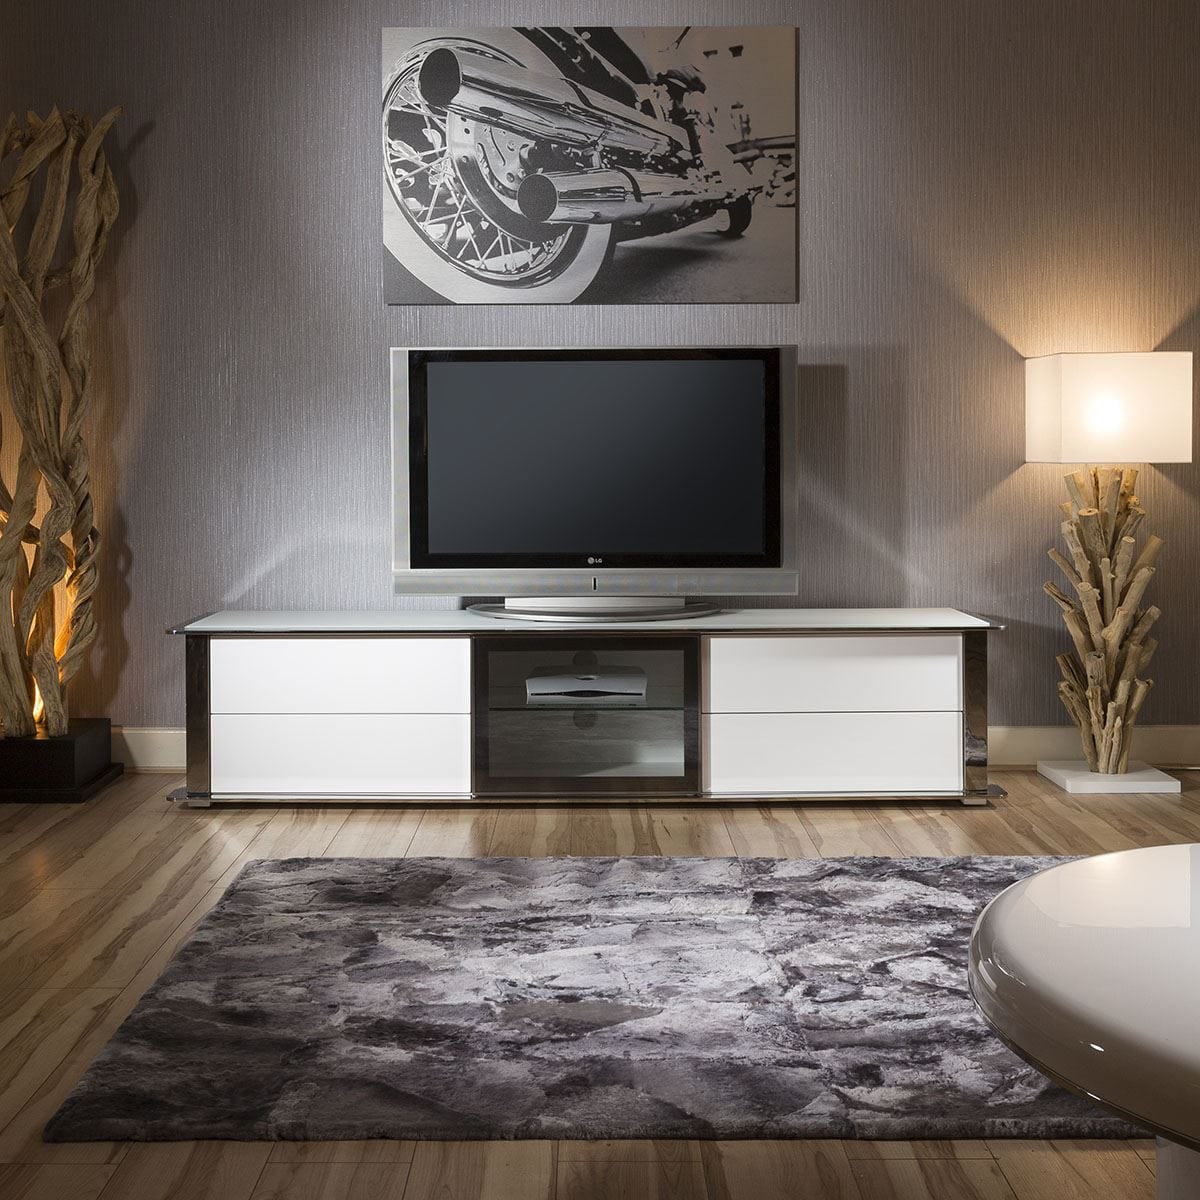 Quatropi Large TV Cabinet Stand White Gloss and Chrome Modern Quatropi 233 New